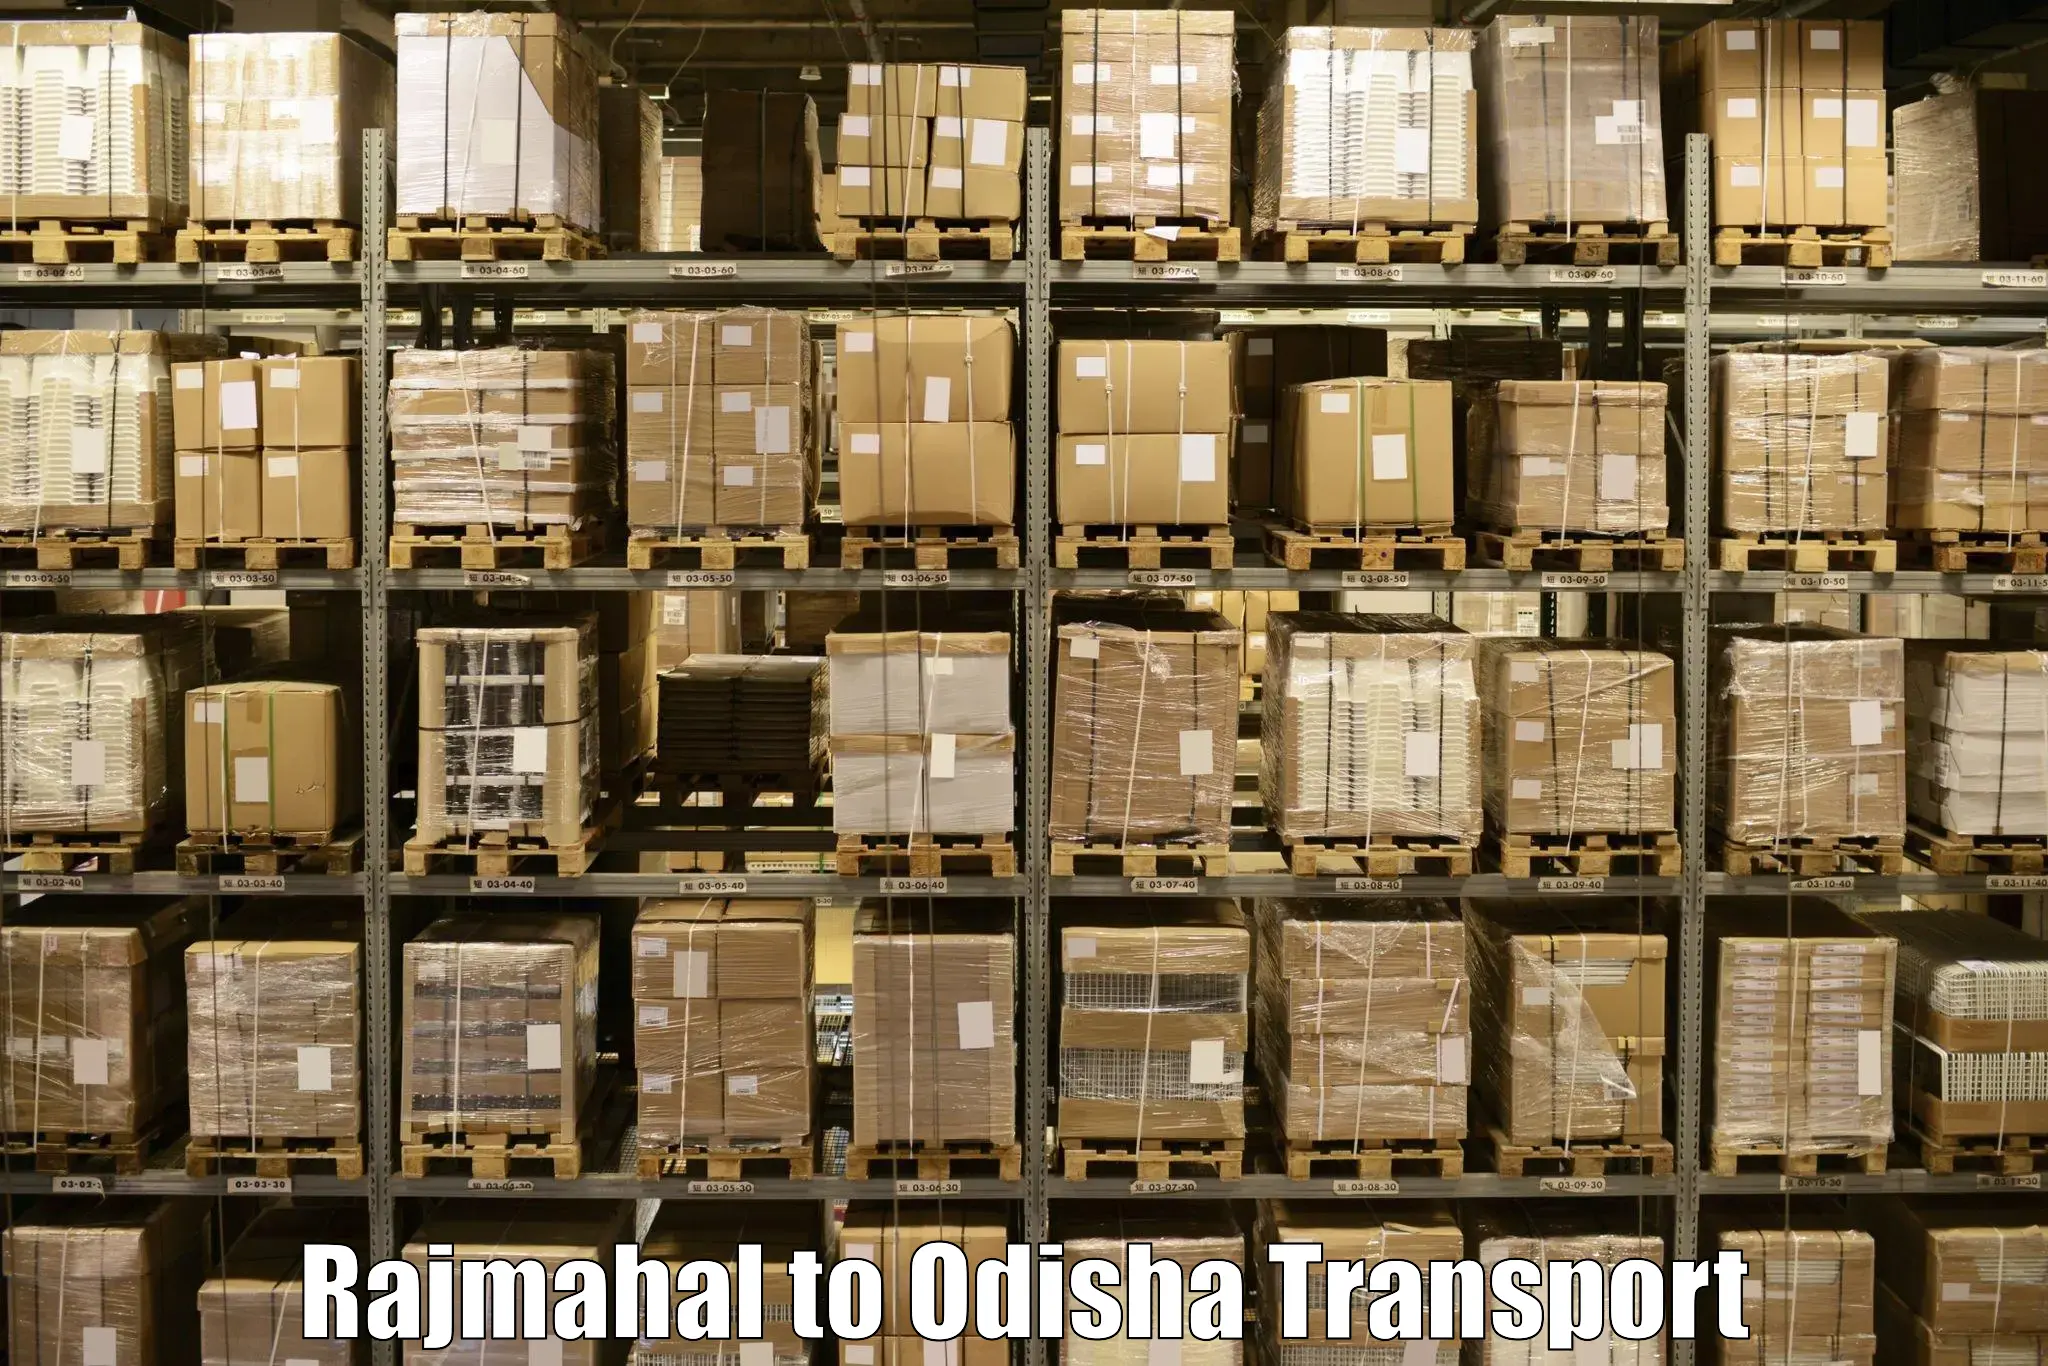 Air freight transport services in Rajmahal to Junagarh Kalahandi